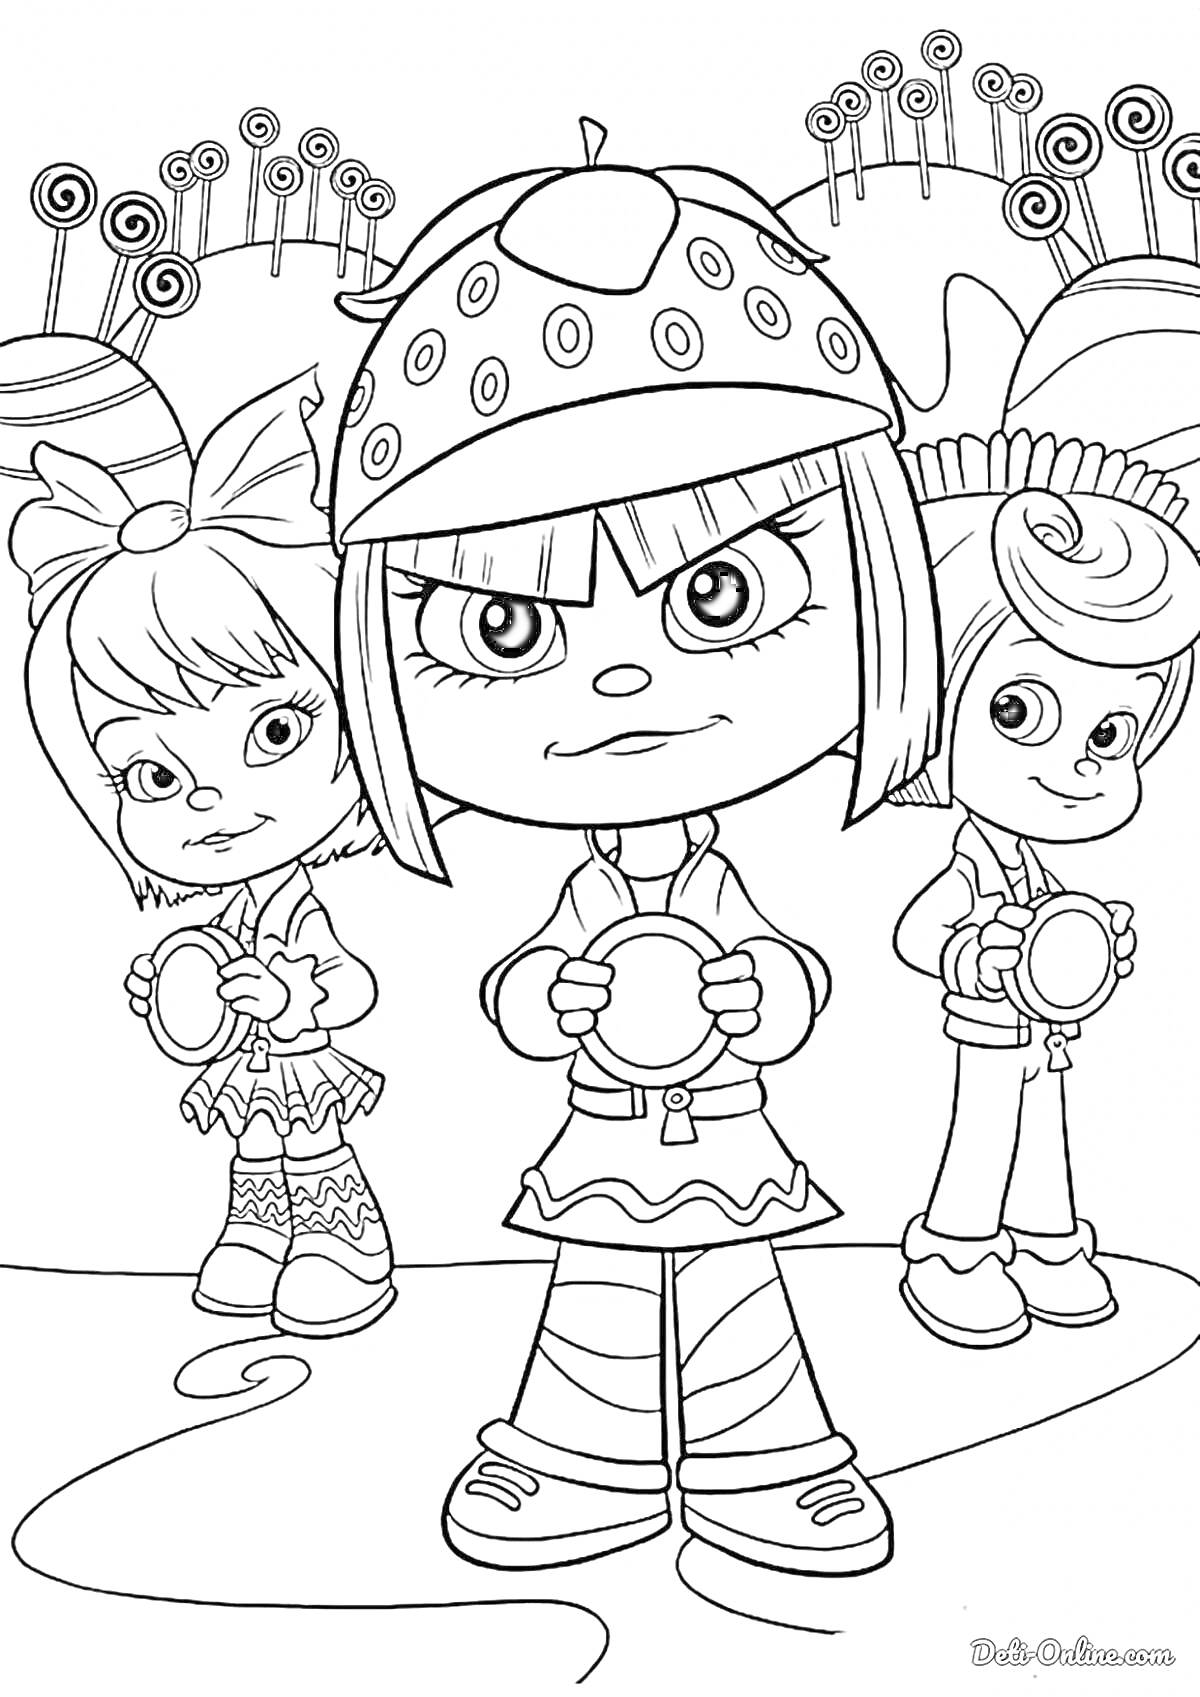 Раскраска Три мультяшные девочки с лепестковыми аксессуарами на головах, стоящие на заднем плане с волнистыми деревьями